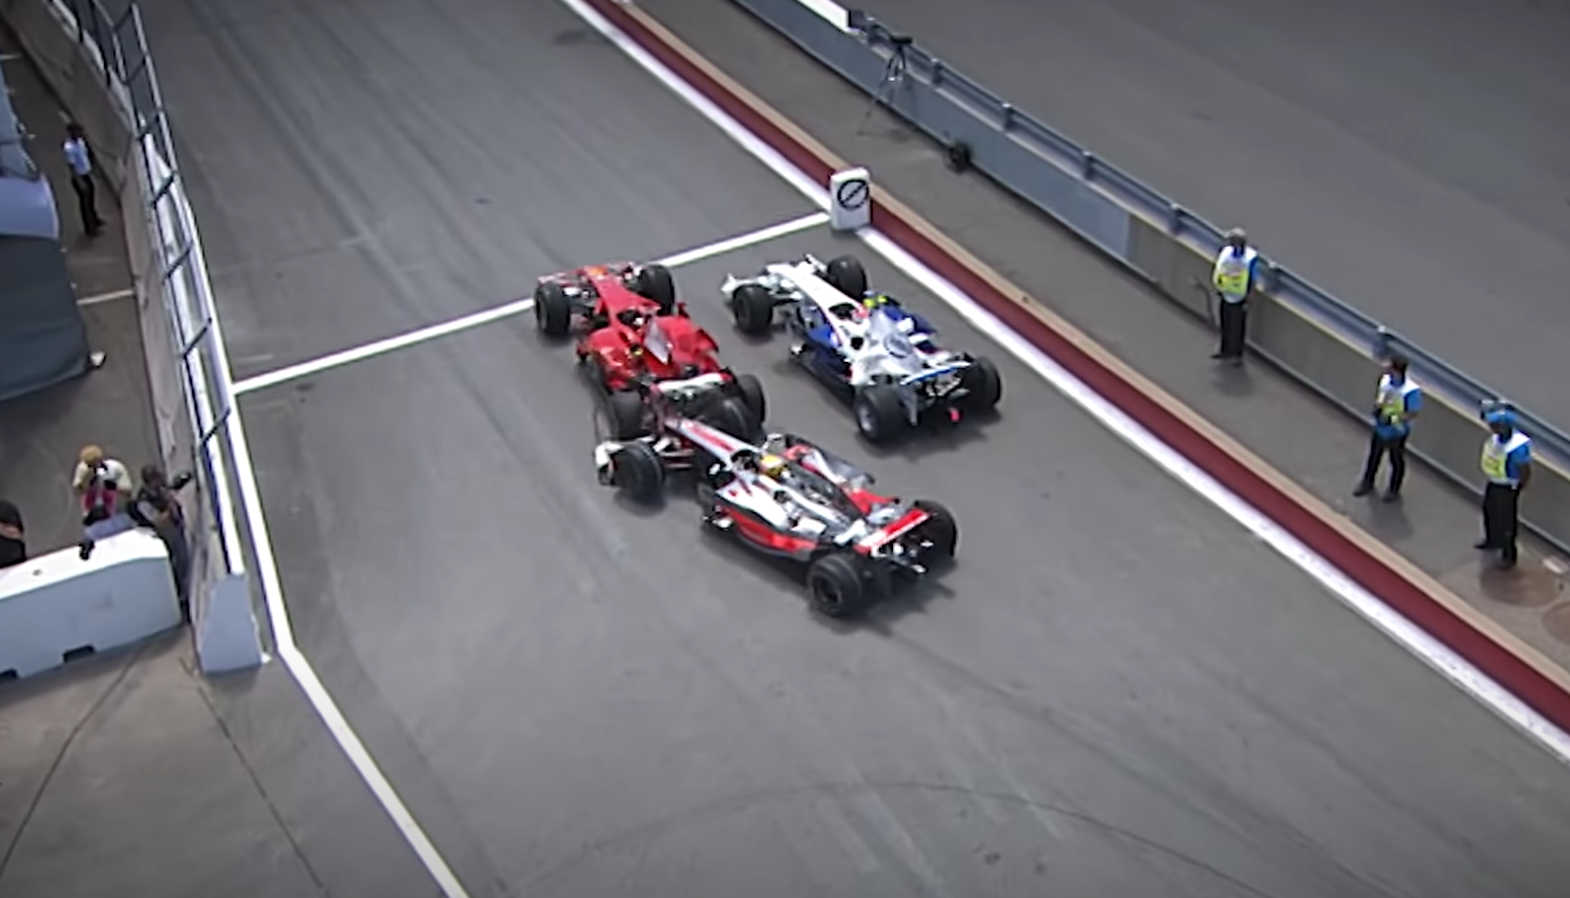 Nevinný výjezd Safety Caru během GP Kanady způsobil kolizi v boxech mezi Hamiltonem a Räikkönenem, Kubica slavil vítězství